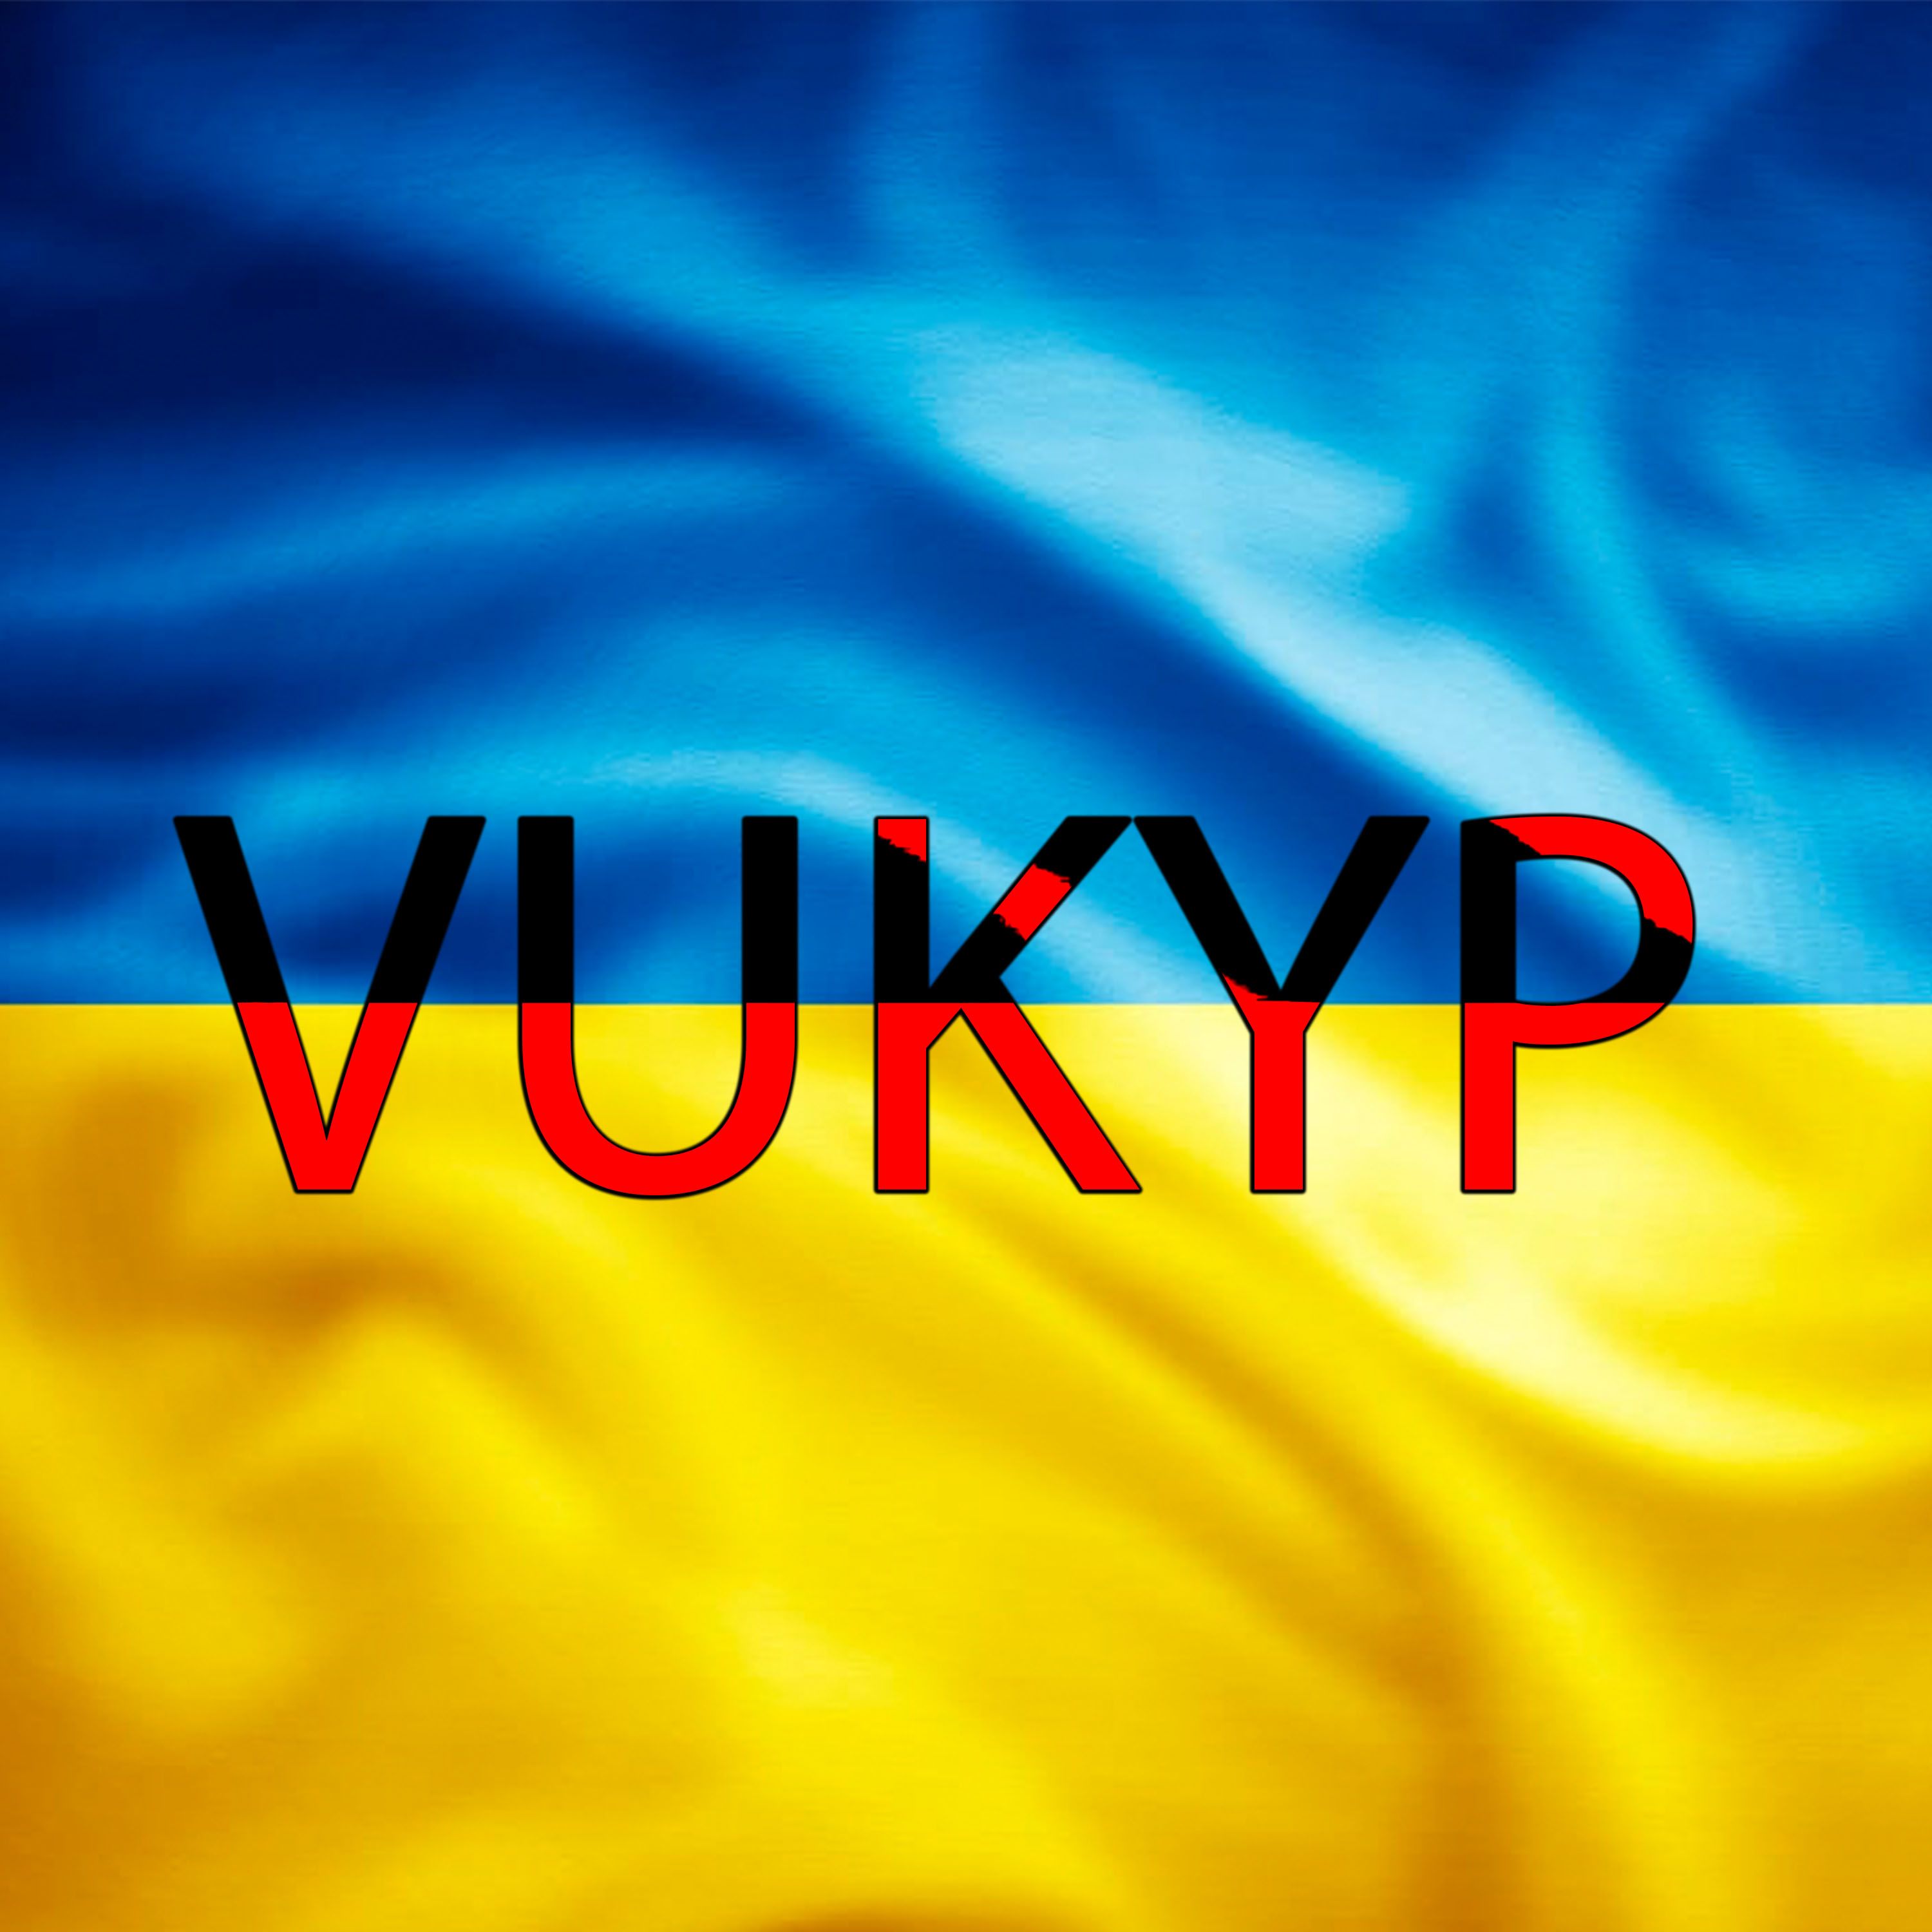 බාගත Vukyp - UKR